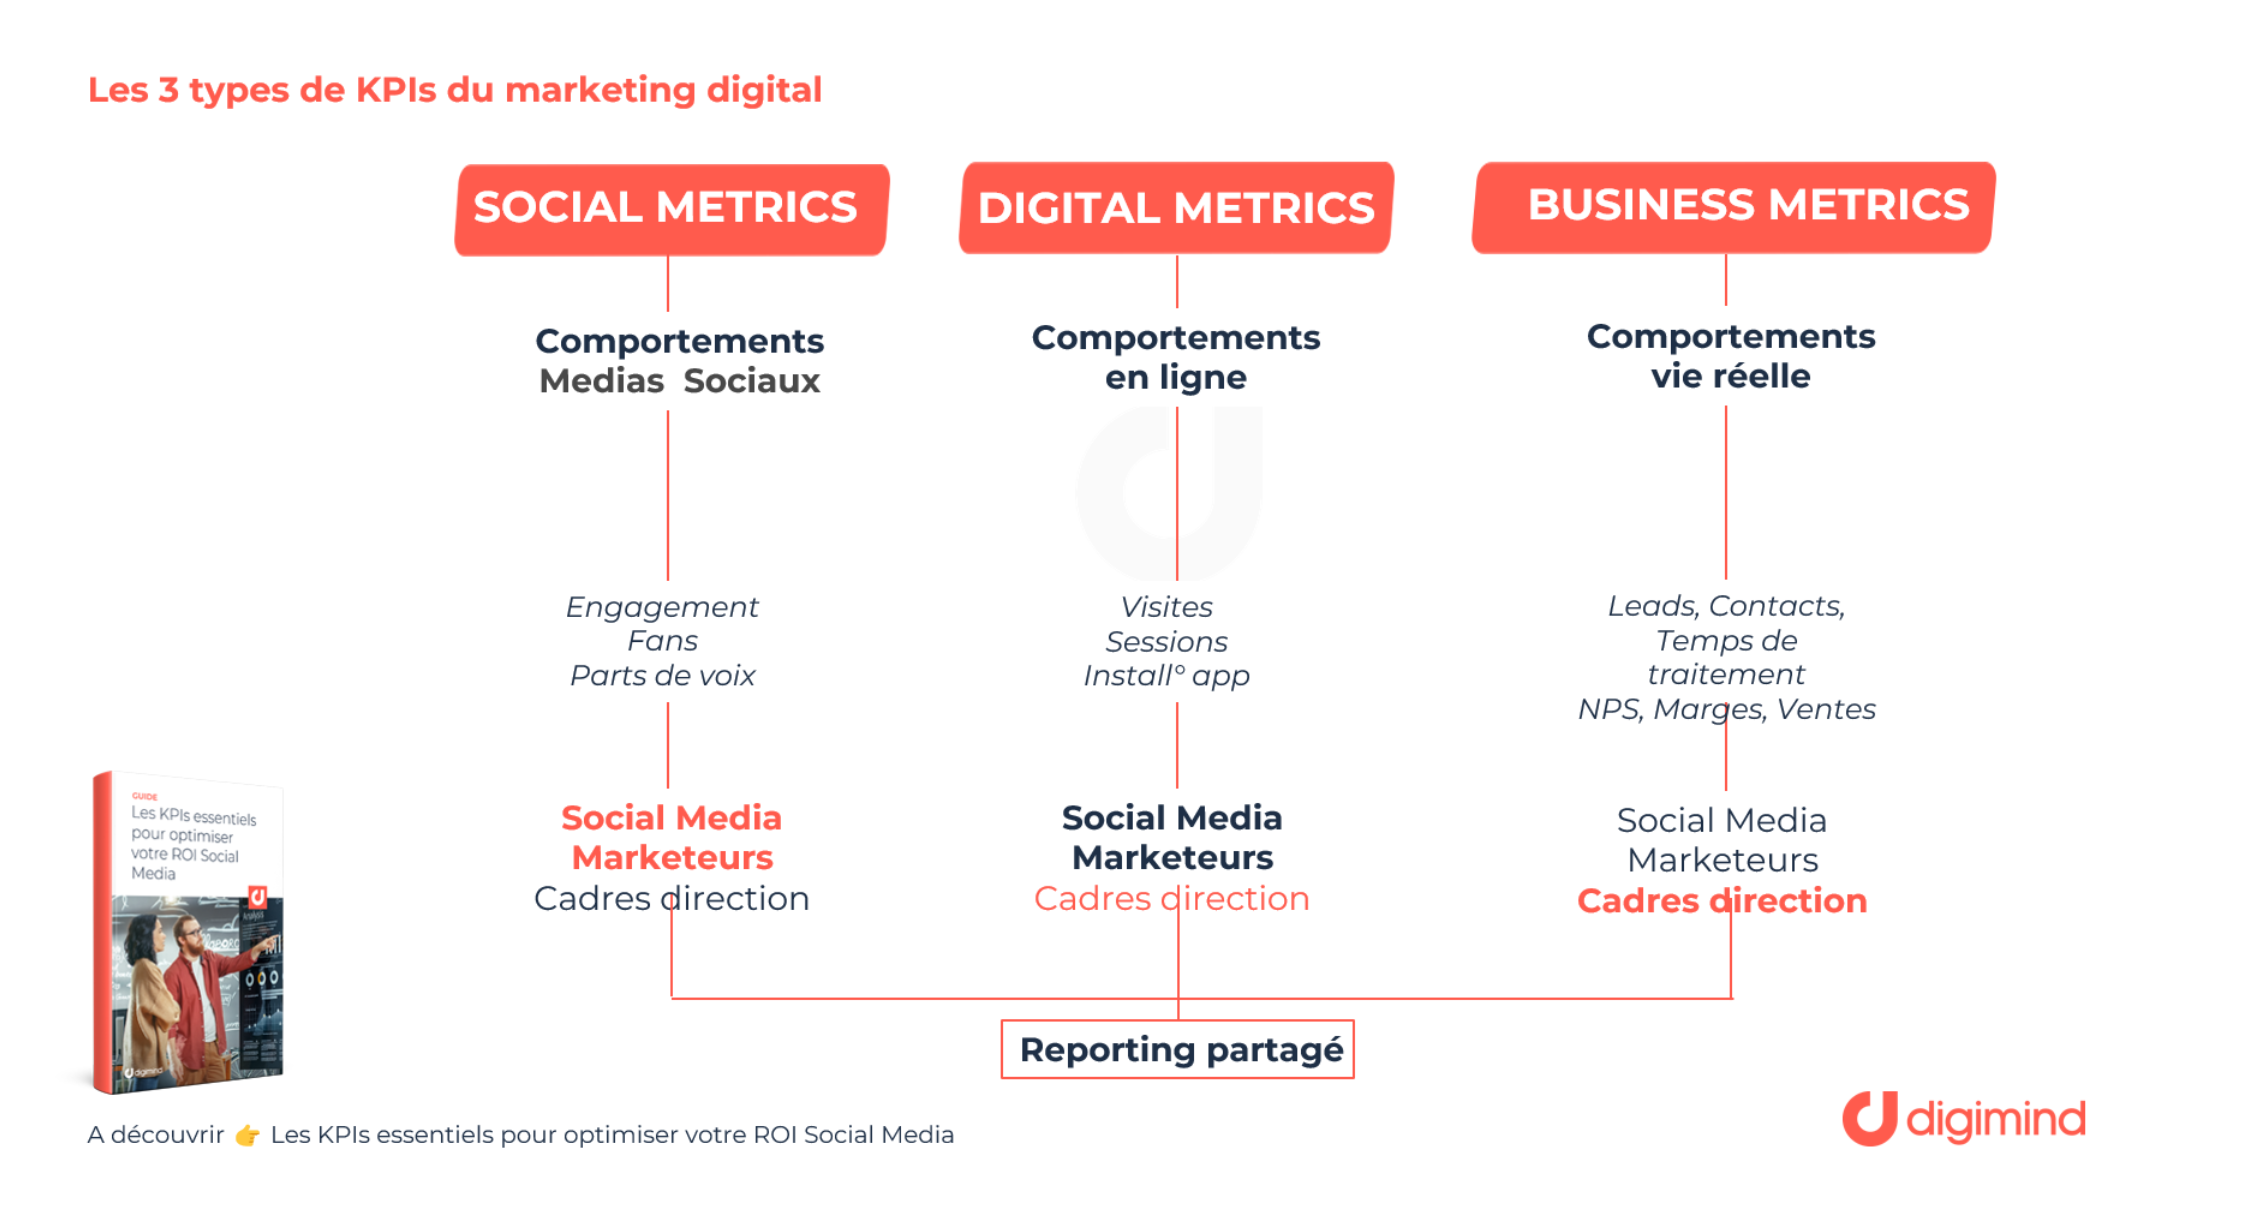 Les 3 types de KPIs du marketing digital . Via le guide : Les KPIs essentiels pour optimiser votre ROI Social Media